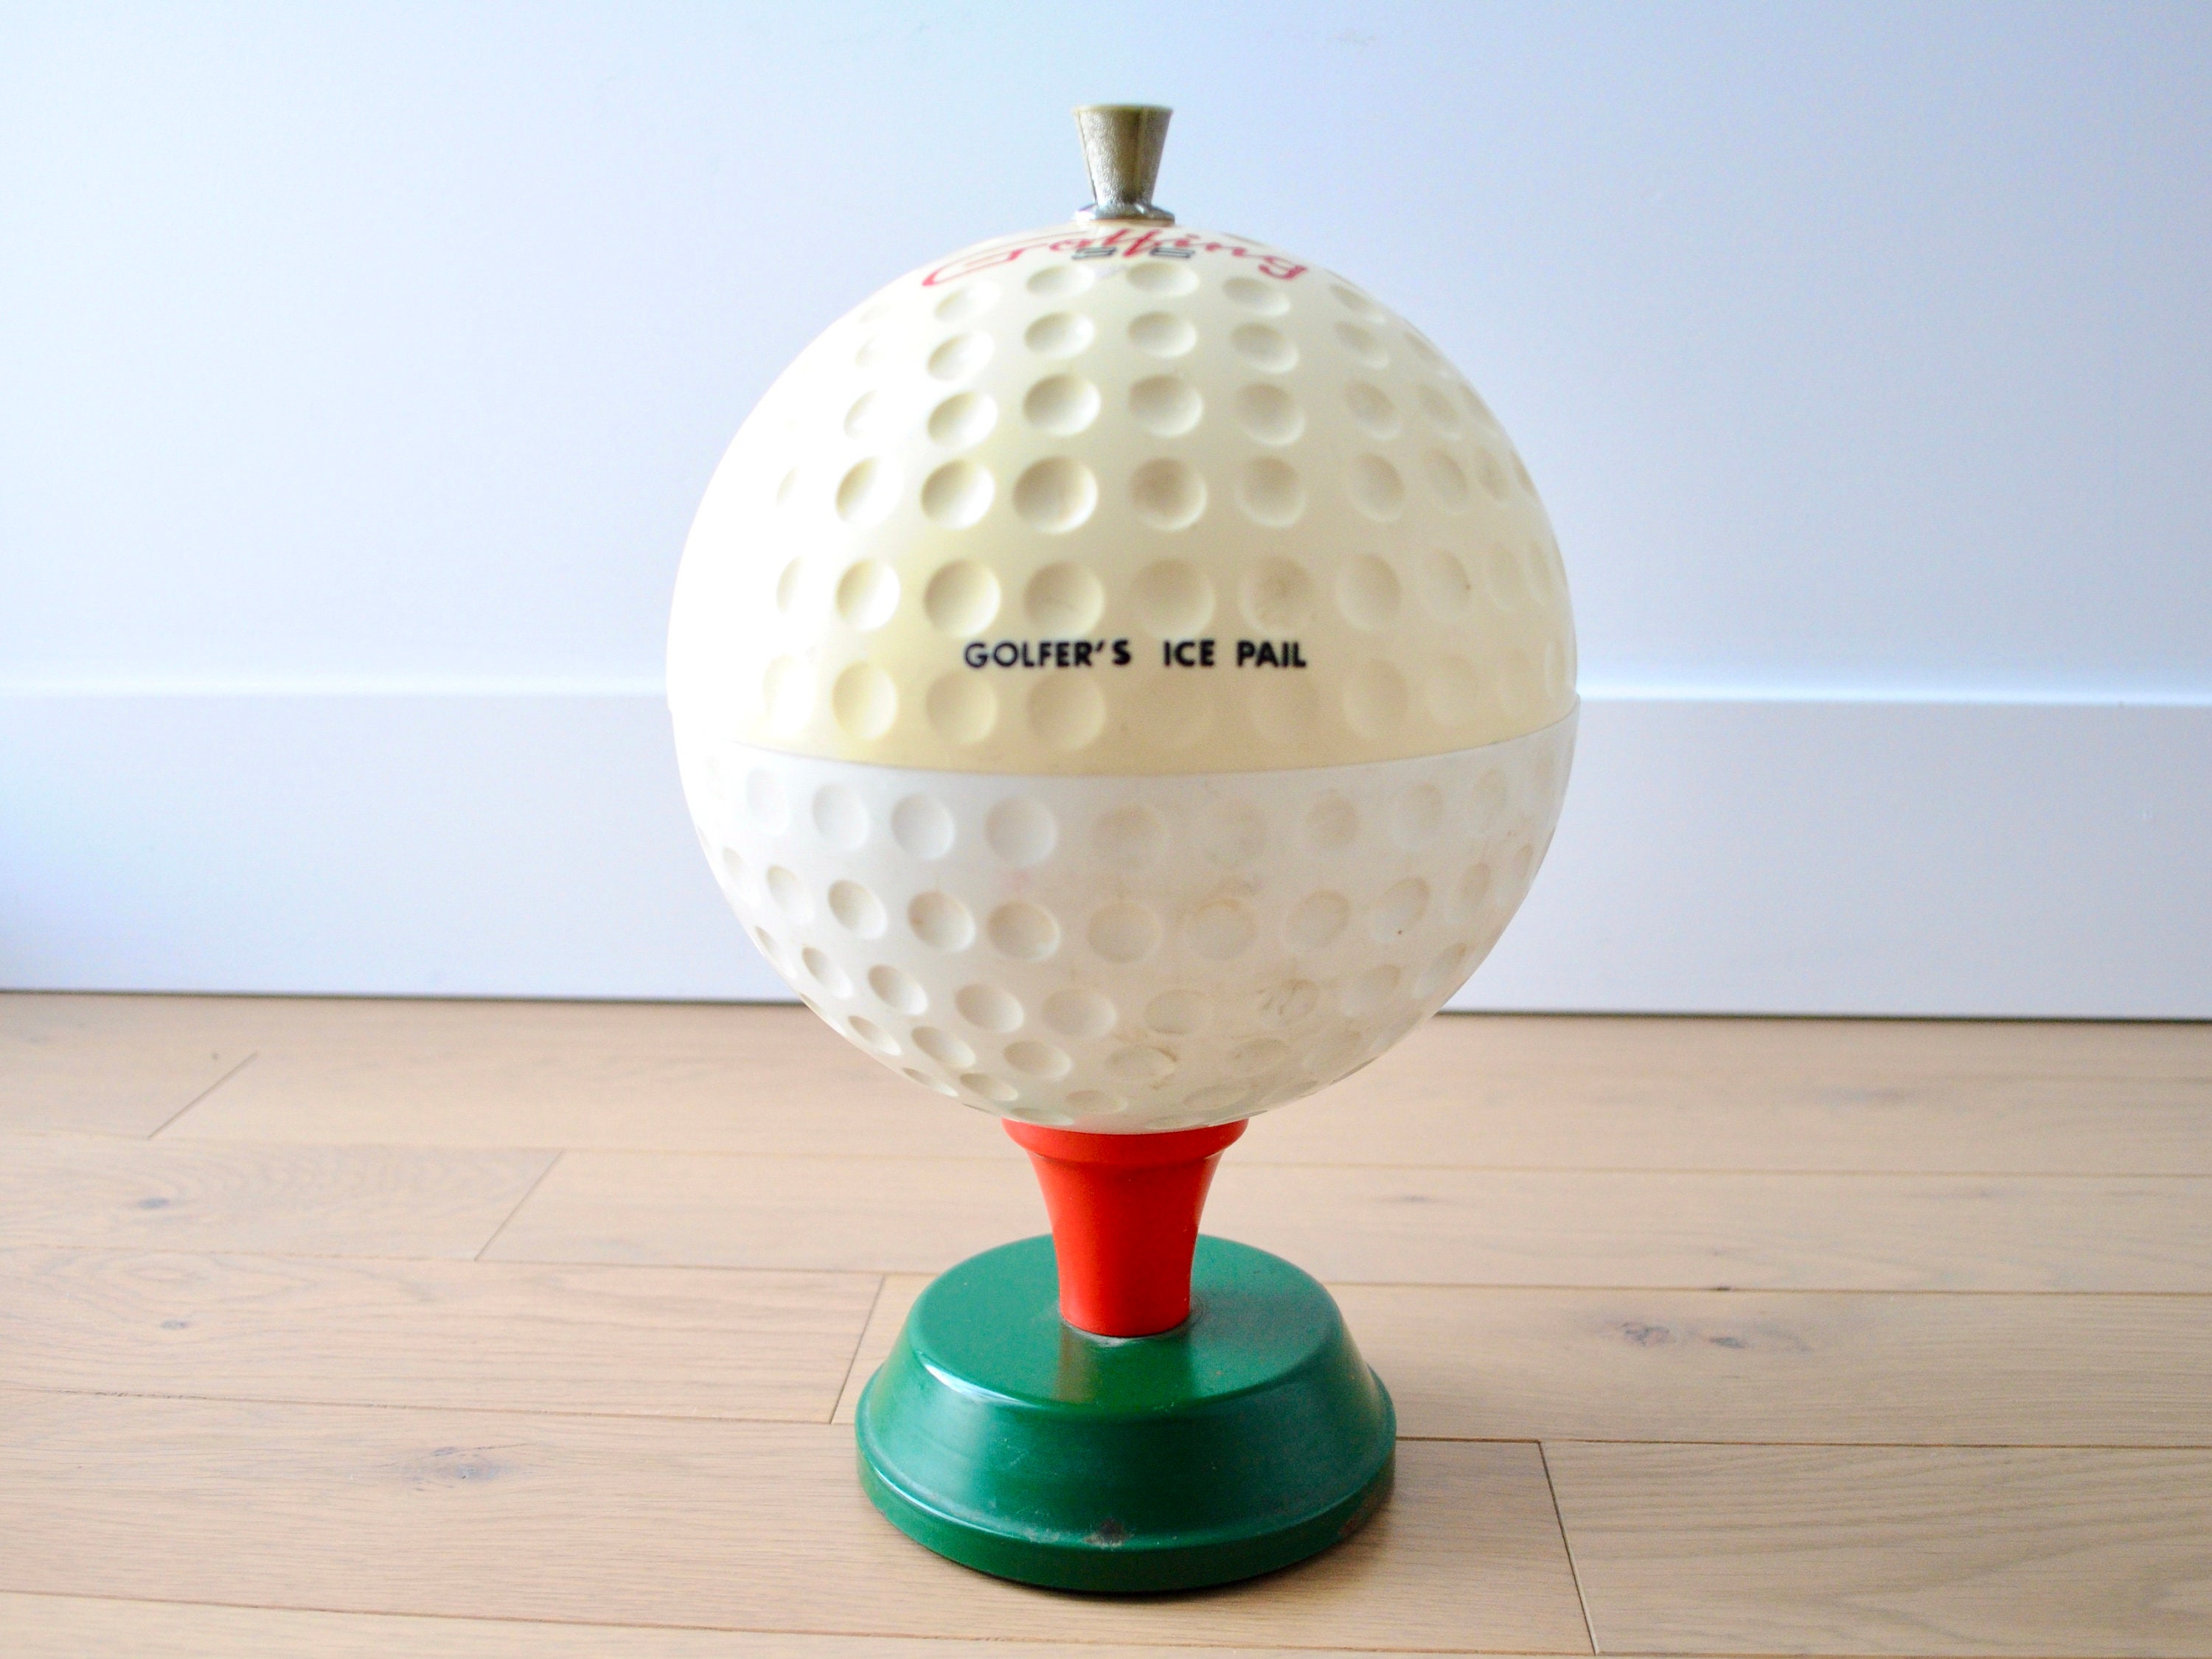 Vintage Golfers Plastic Ice Bucket made Japan shape of ball on tee